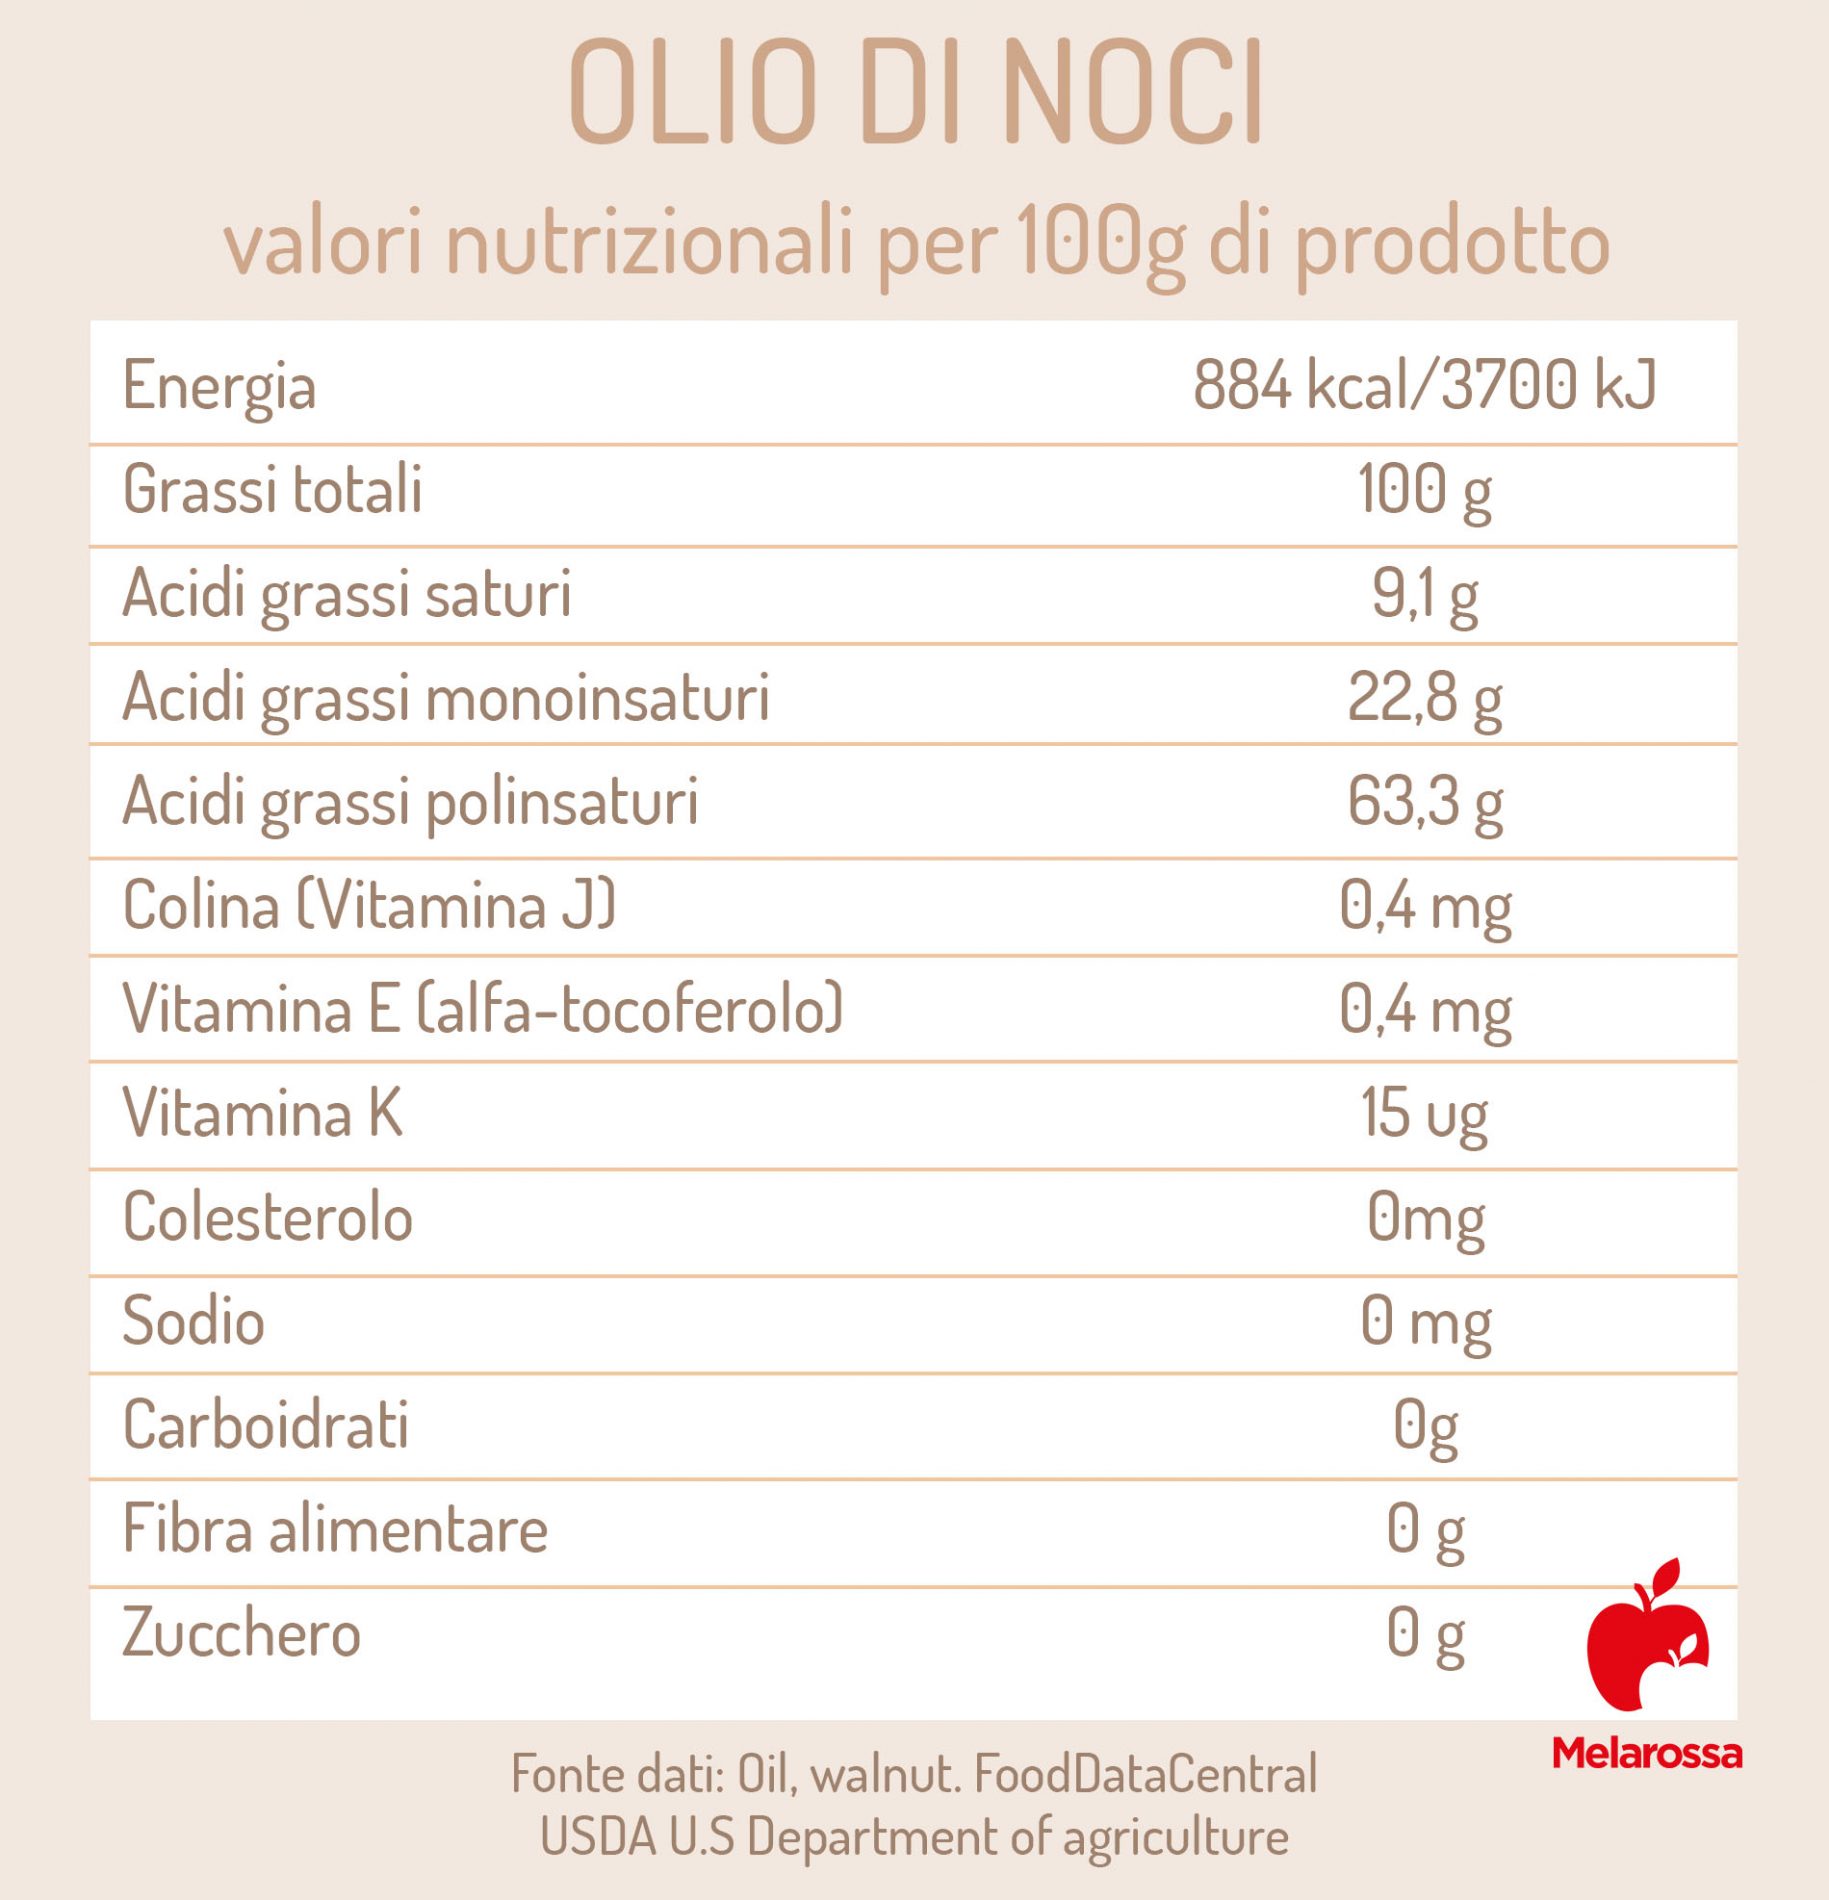 olio di noci: valori nutrizionali 